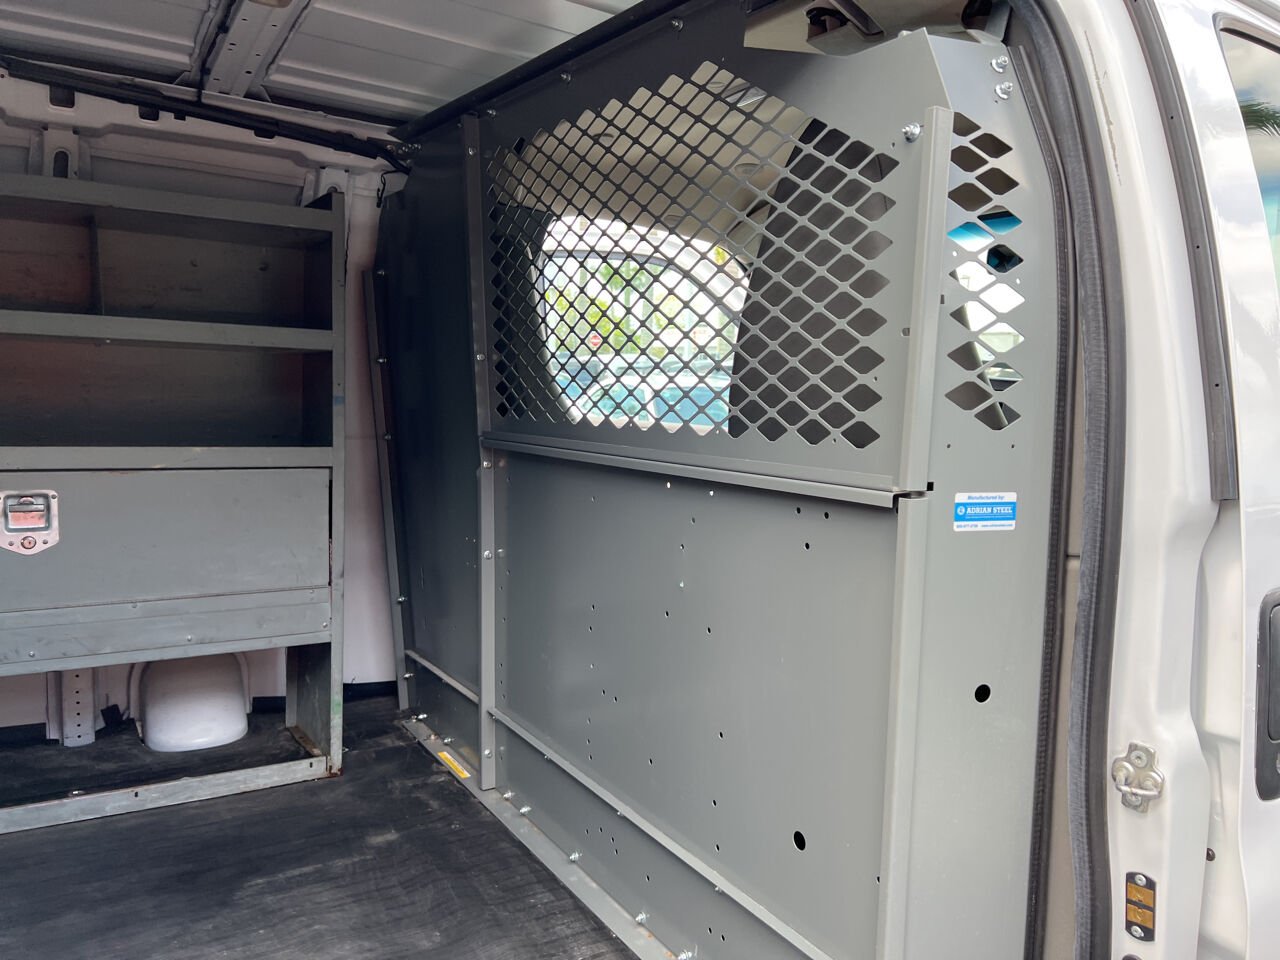 2018 CHEVROLET Express Van - $24,900